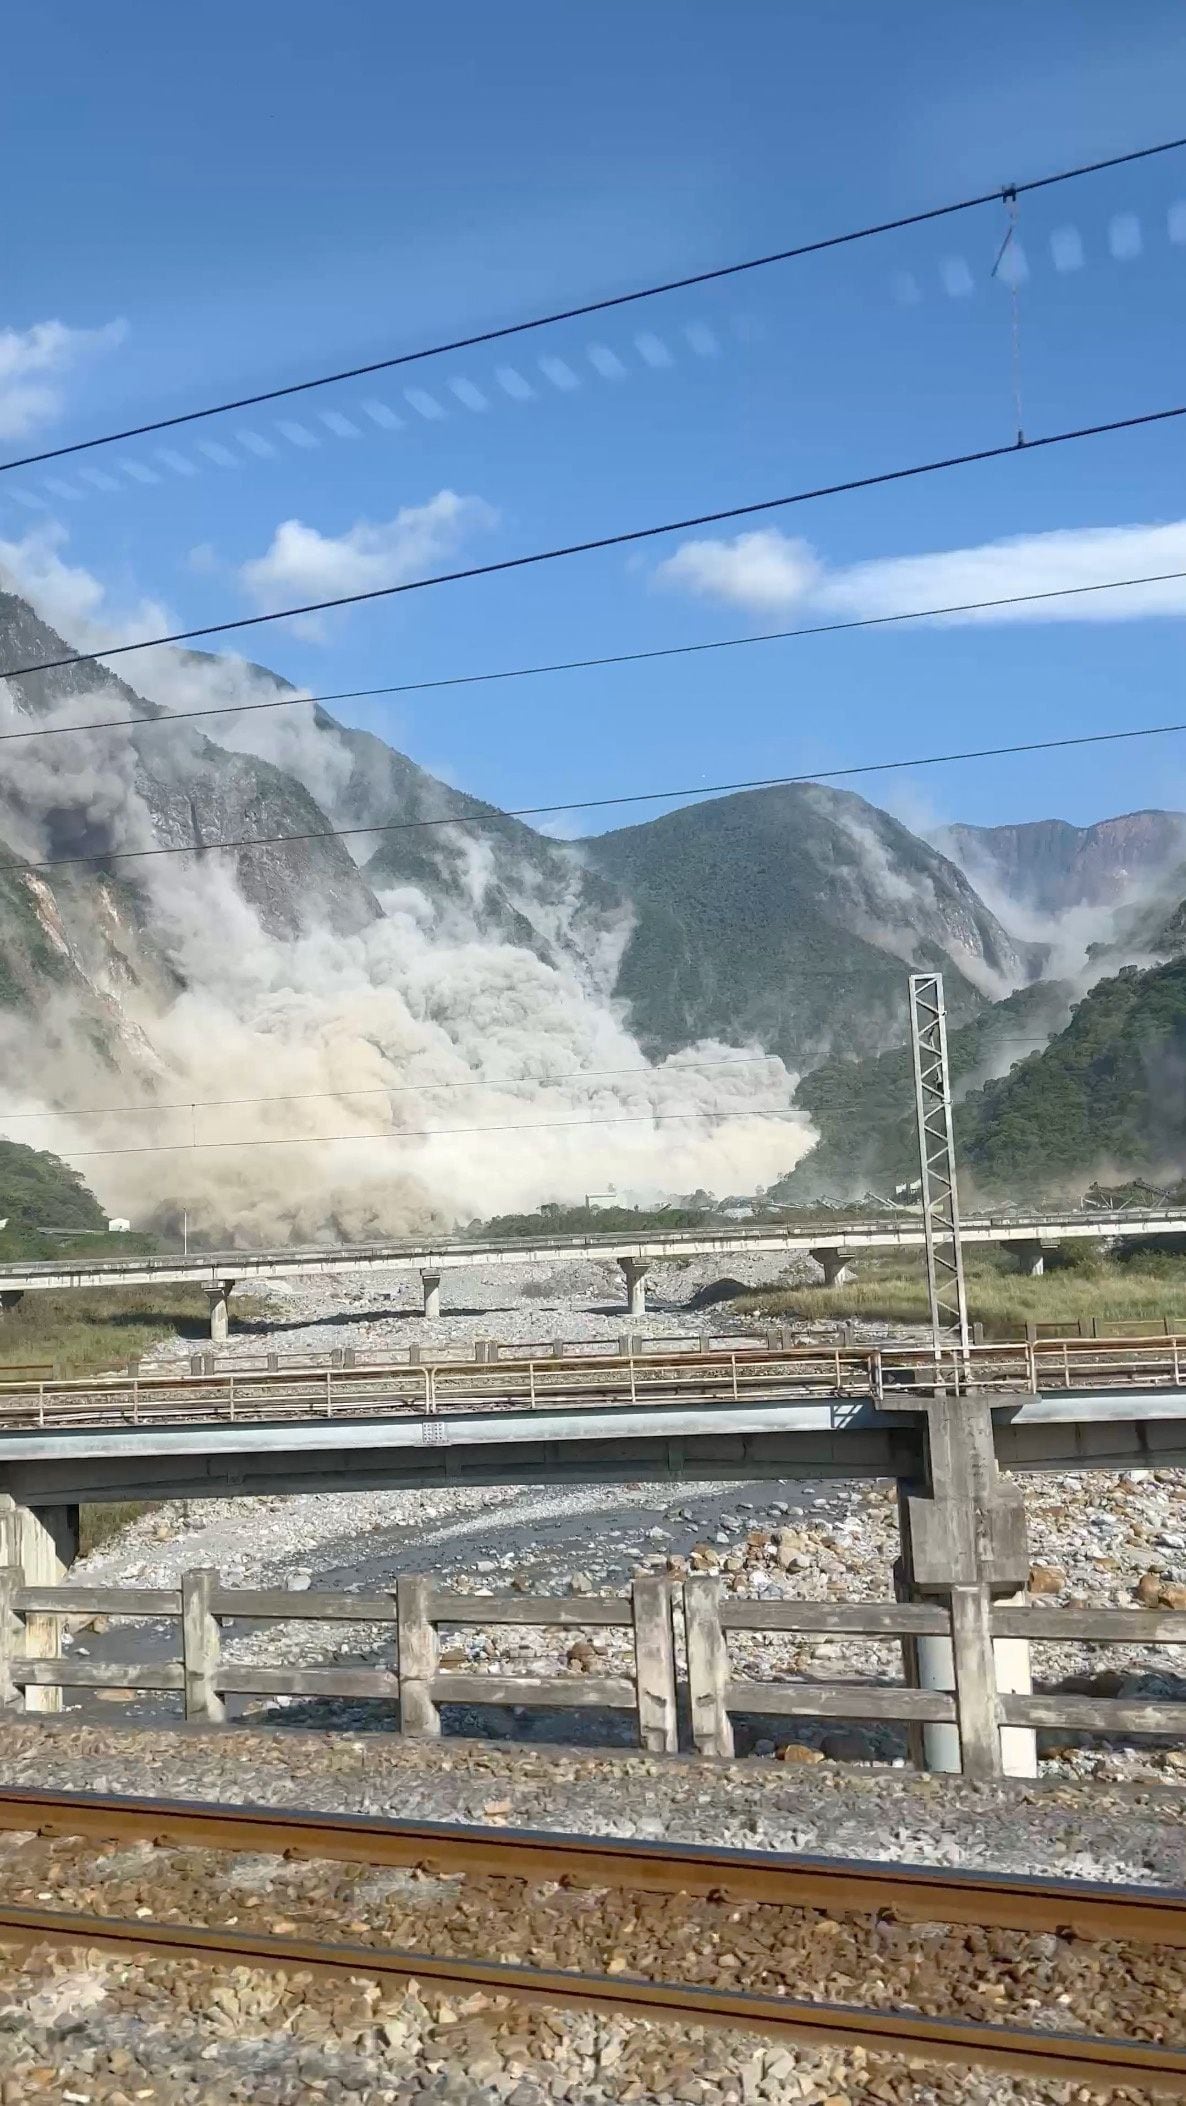 Autoridades de Taiwán, Japón y Filipinas emitieron alertas de tsunami para sus regiones costeras, aunque la amenaza fue rebajada, indicó el Centro de Alerta de Tsunamis del Pacífico. (REUTERS)